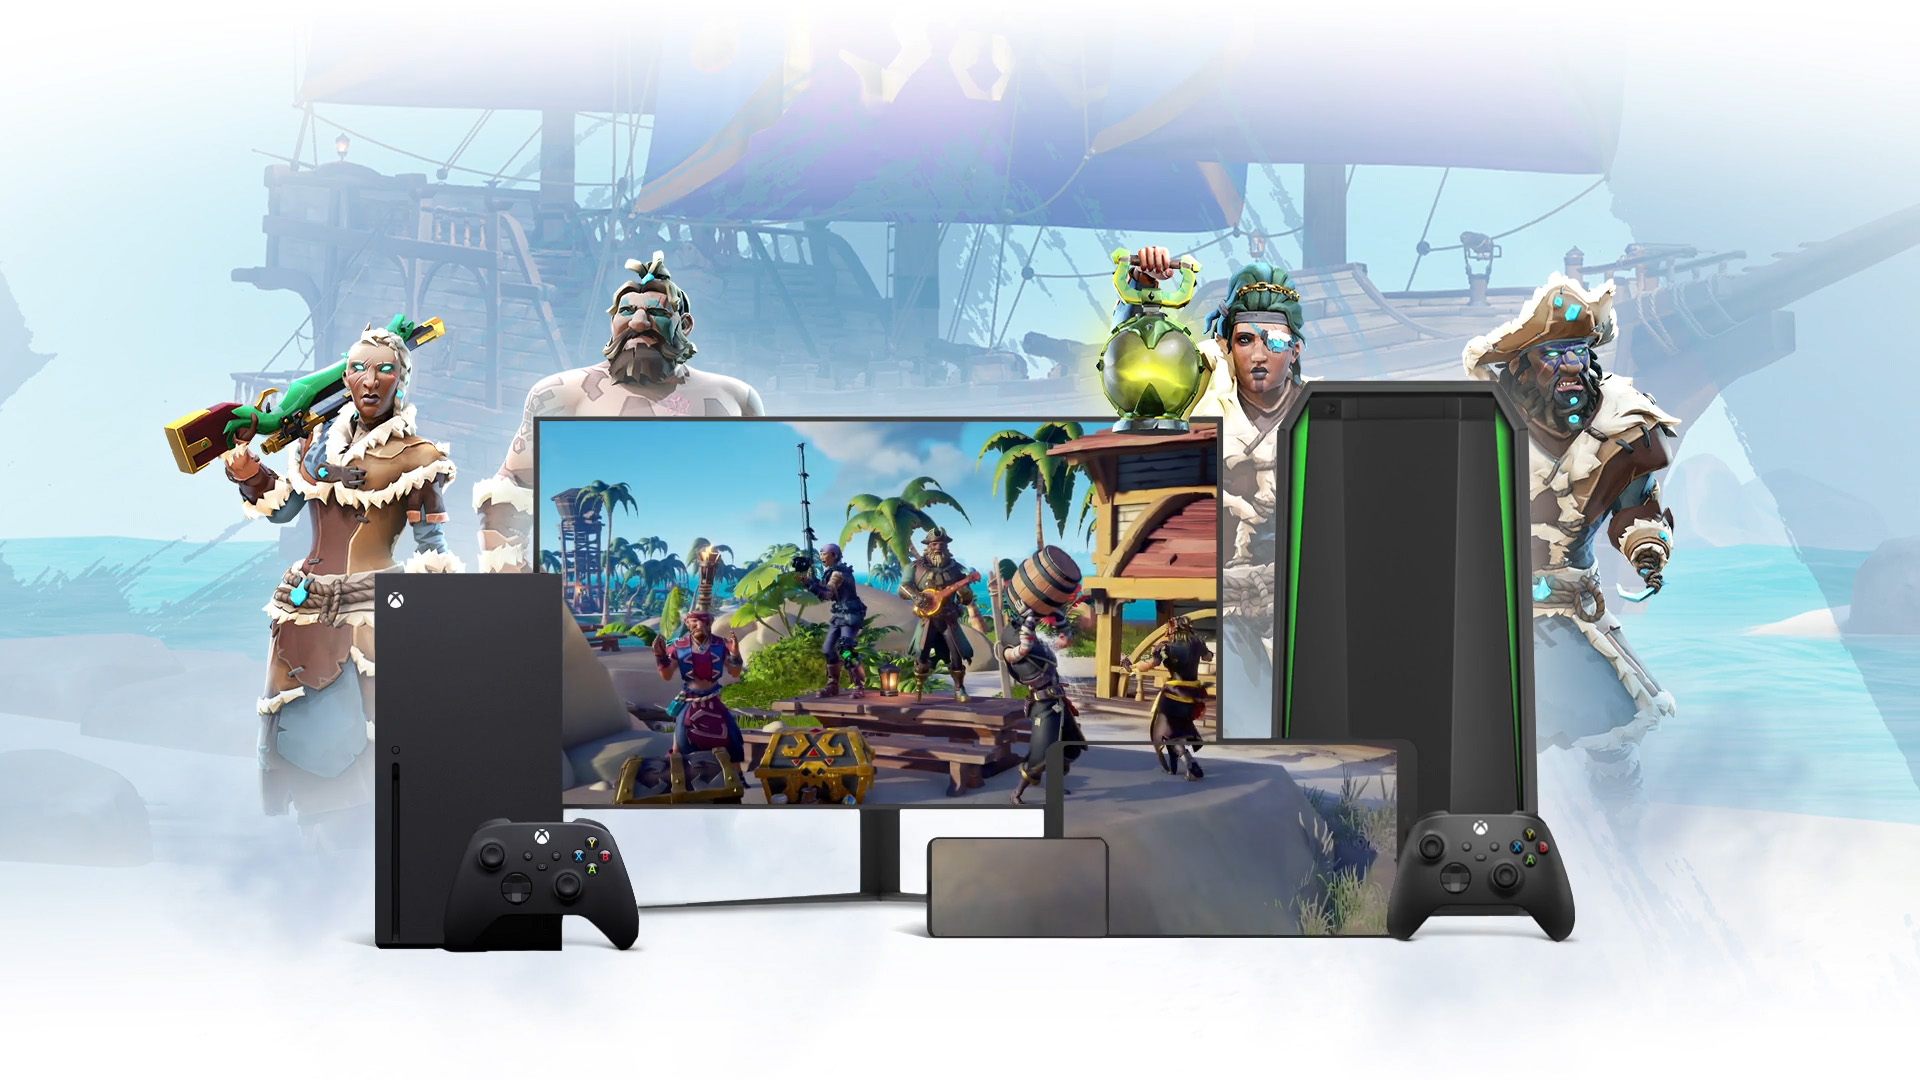 Pozadie s pirátskou loďou a postavami z hry Sea of Thieves obklopujúcimi prenosný počítač, televízor a mobilné zariadenie.